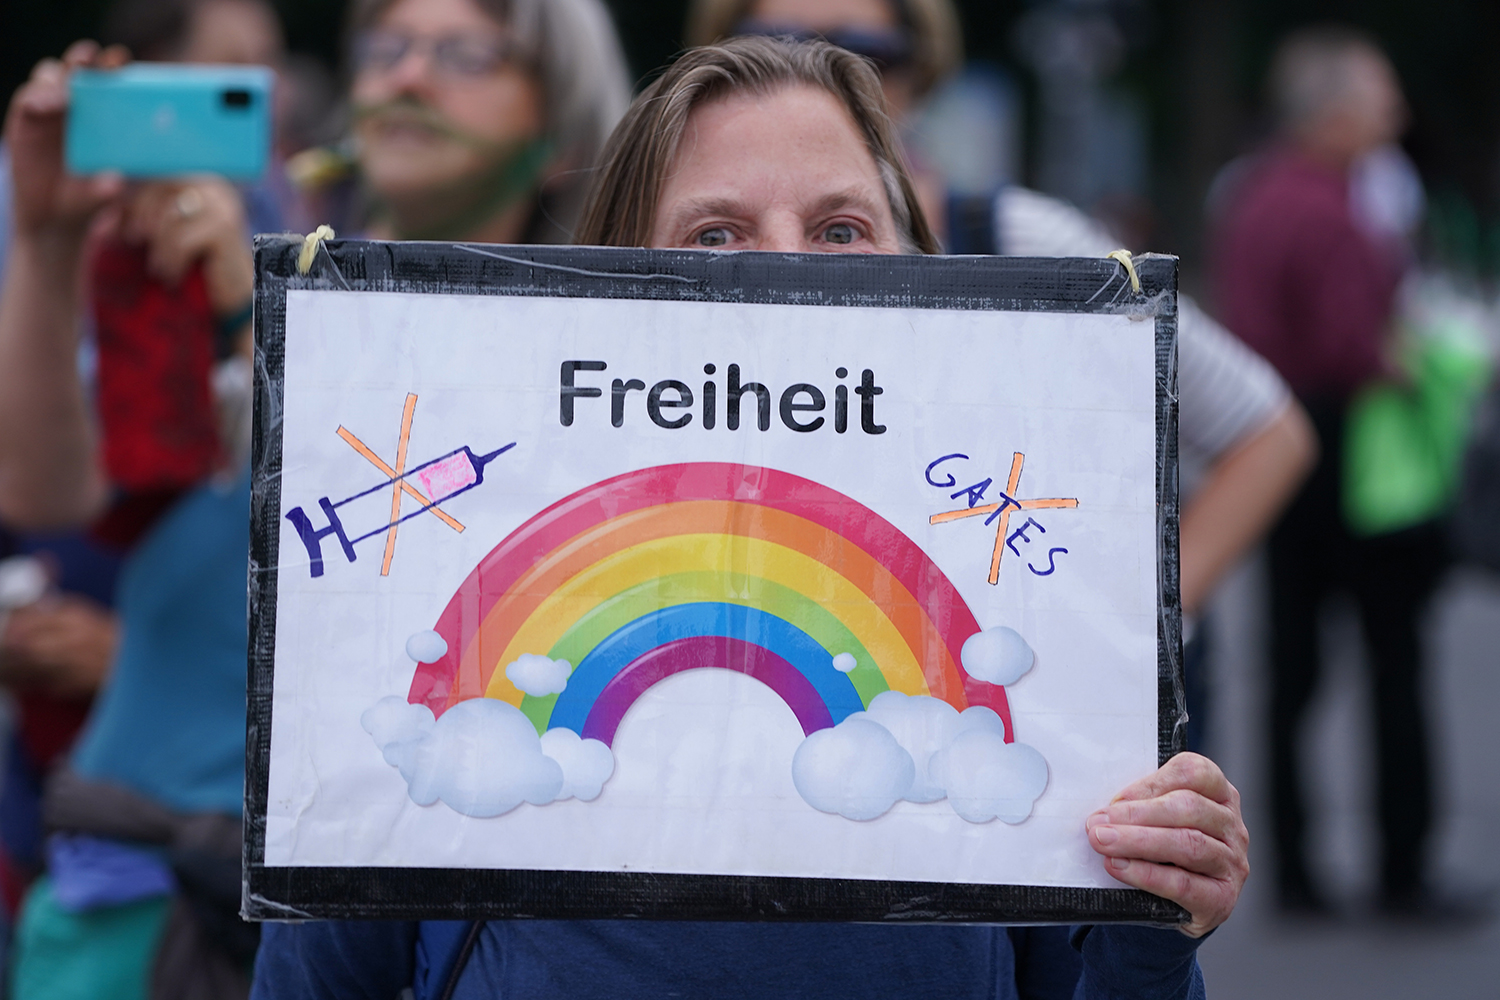 PROTESTOS - Manifestante antivacina na Alemanha: a disseminação de informações falsas pode ter graves consequências sobre a saúde pública -